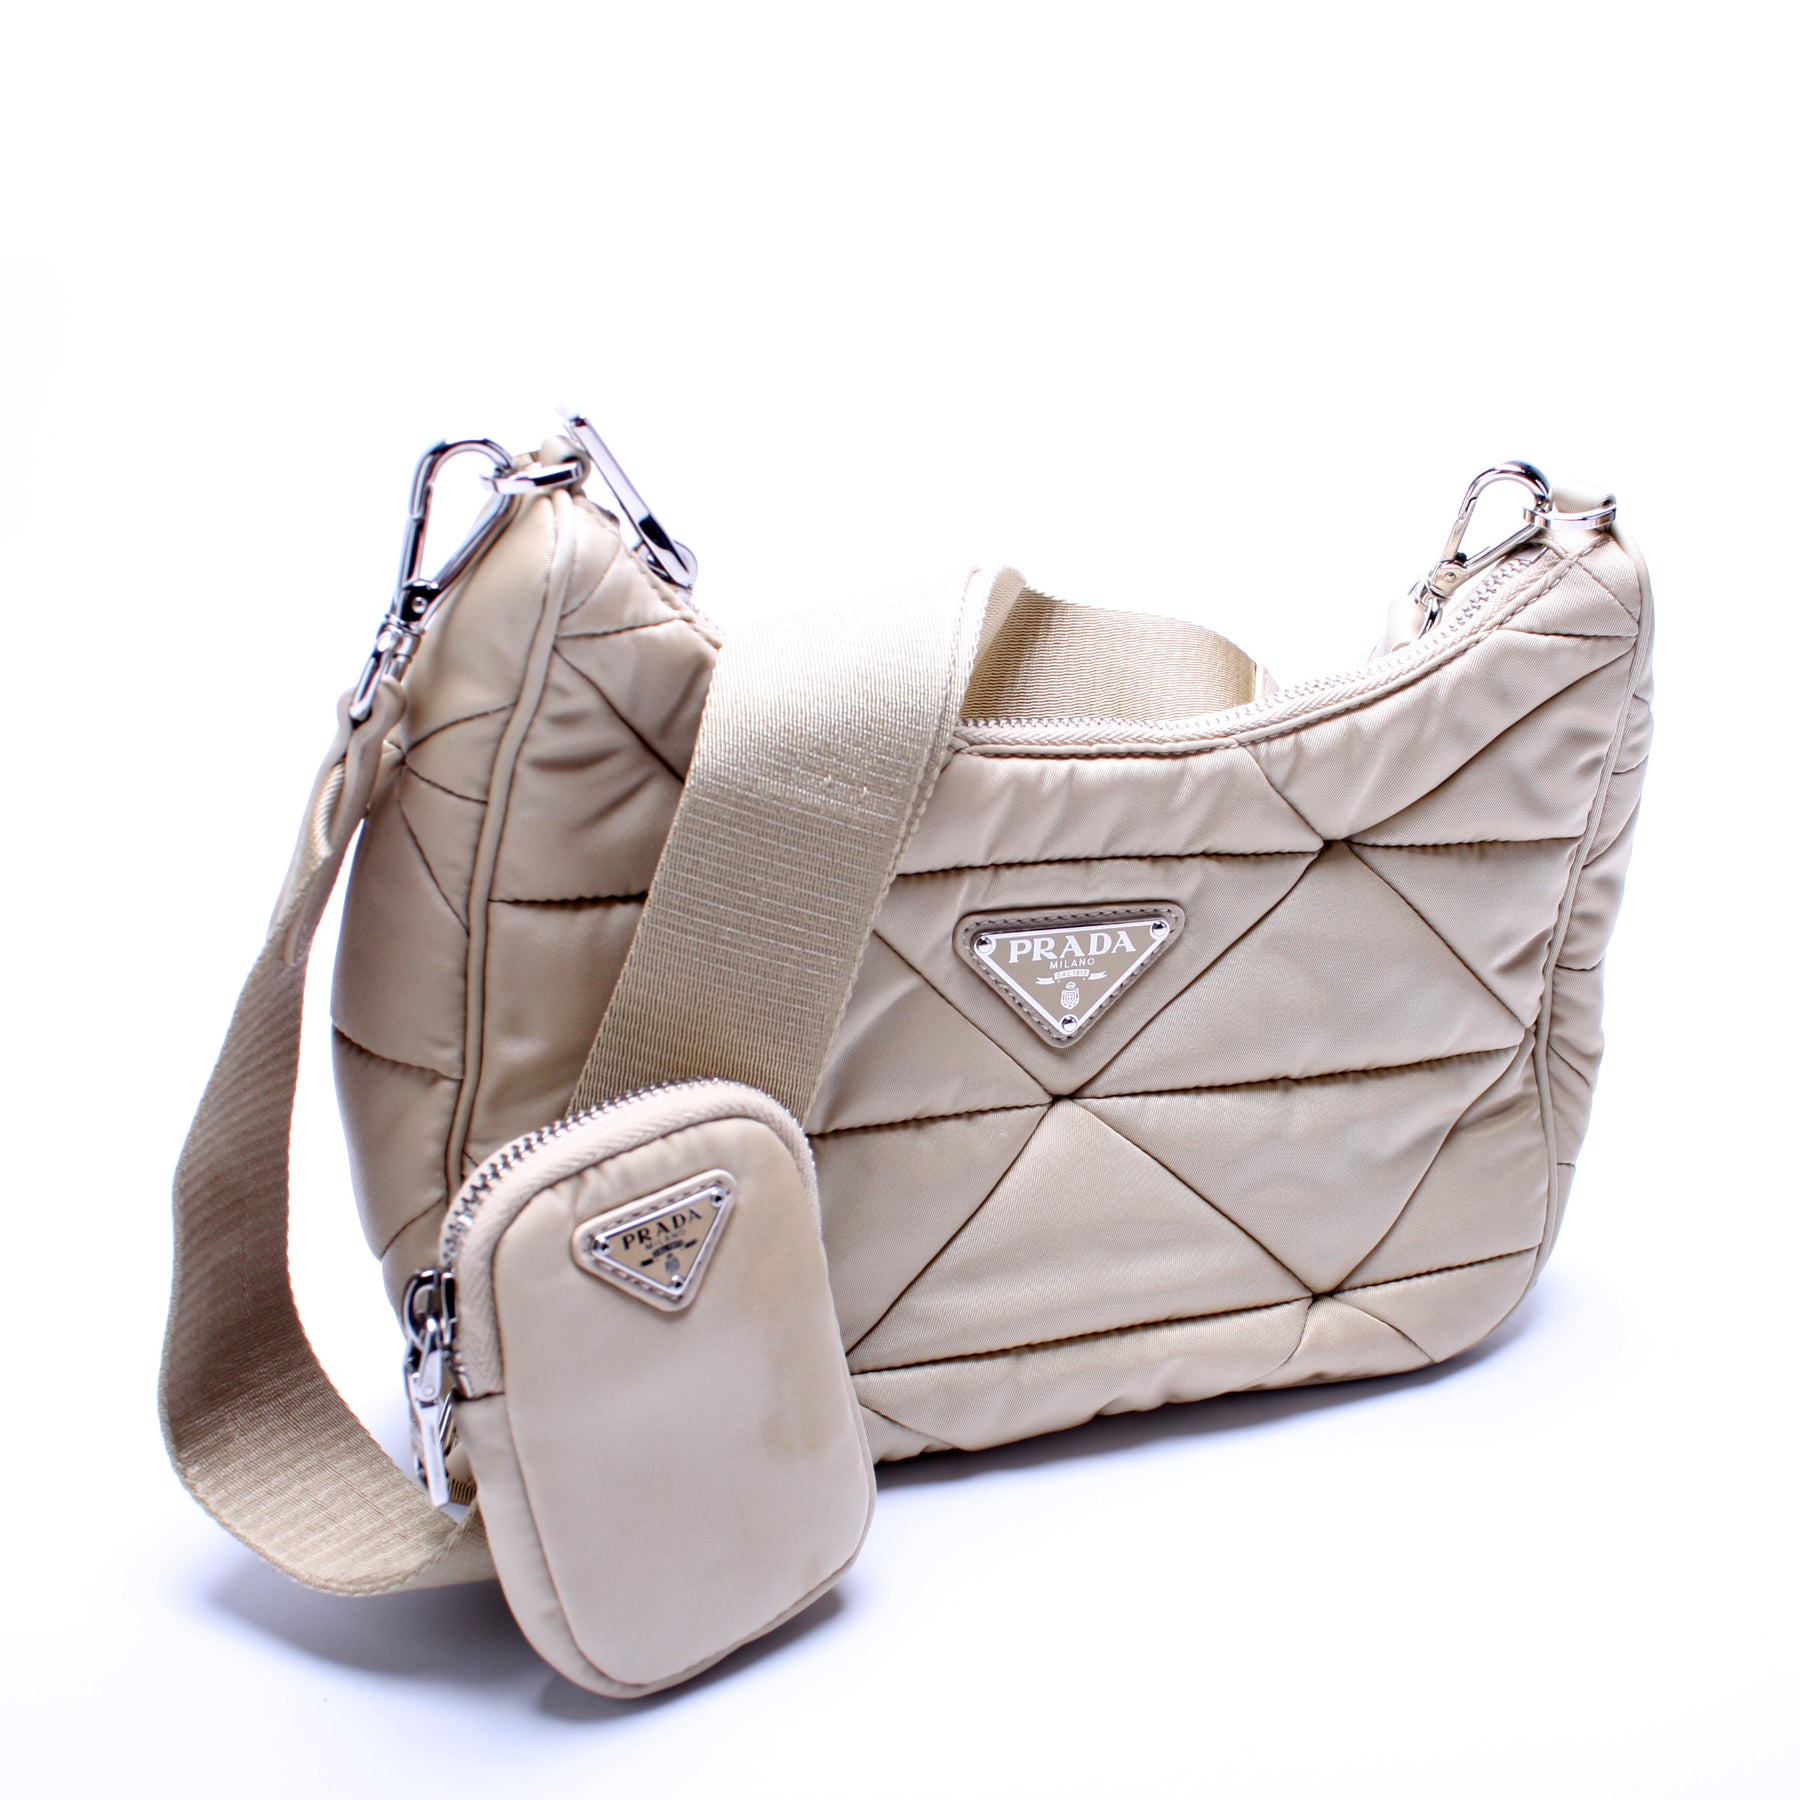 Prada Padded Nylon Shoulder Bag - New in Dust Bag - The